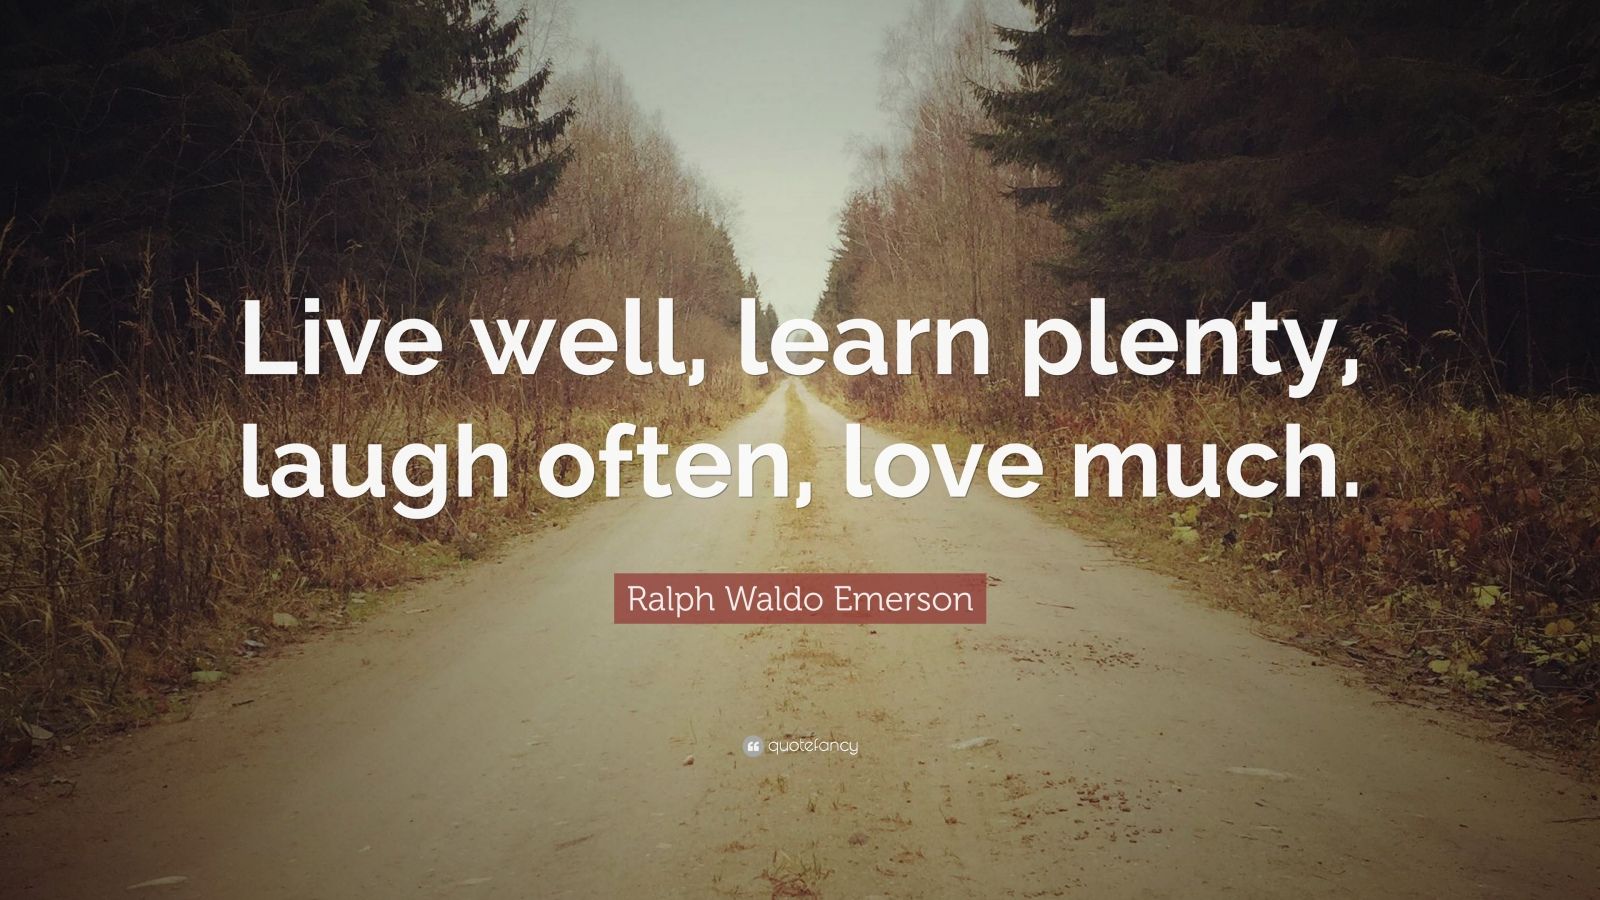 Ralph Waldo Emerson Quote: “Live well, learn plenty, laugh often, love